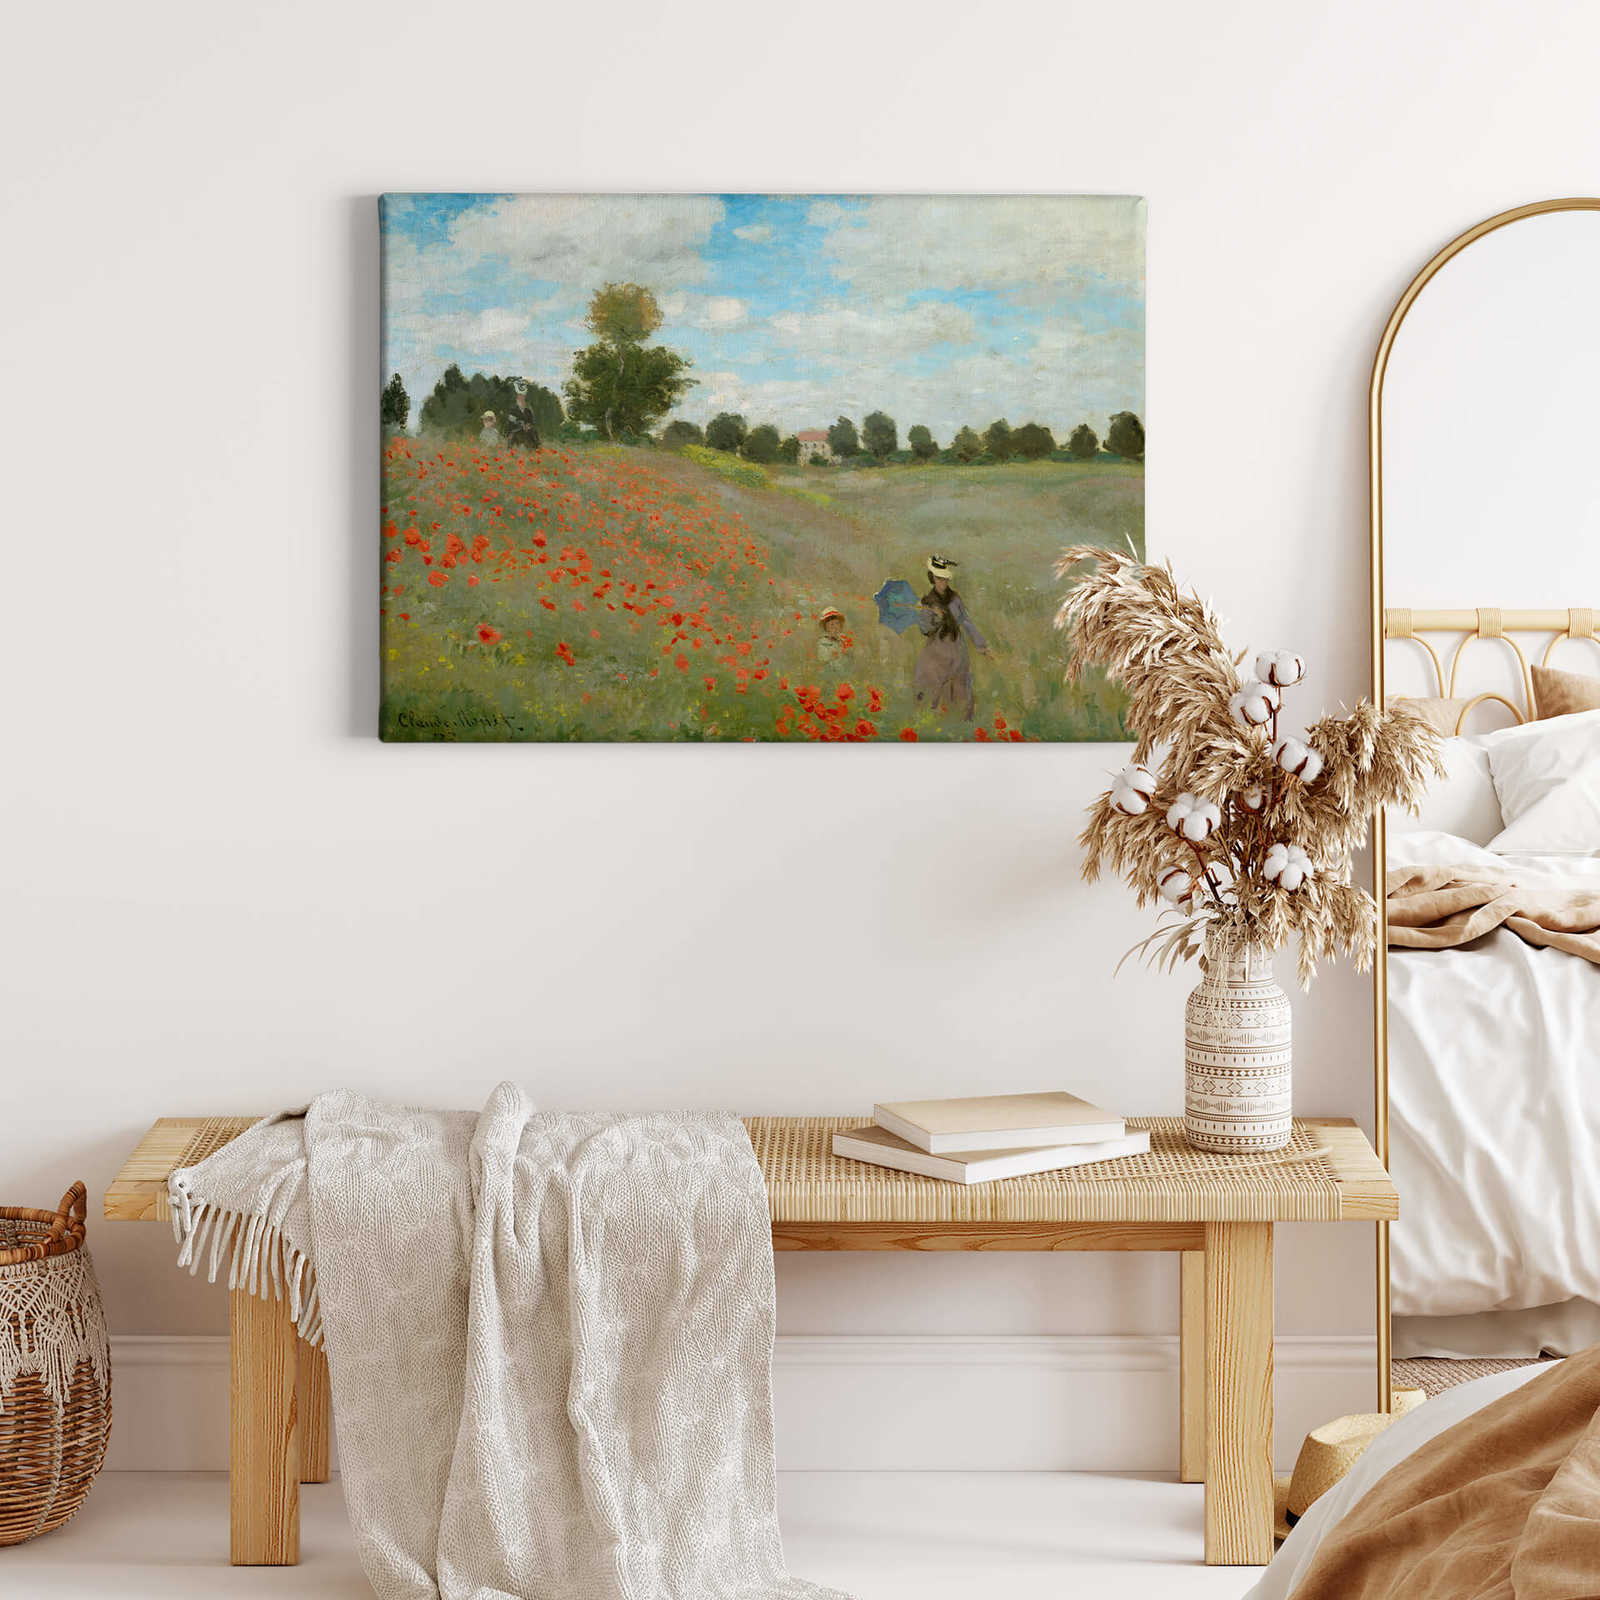             Monet toile "Champ de coquelicots près d'Argenteuil" - 0,70 m x 0,50 m
        